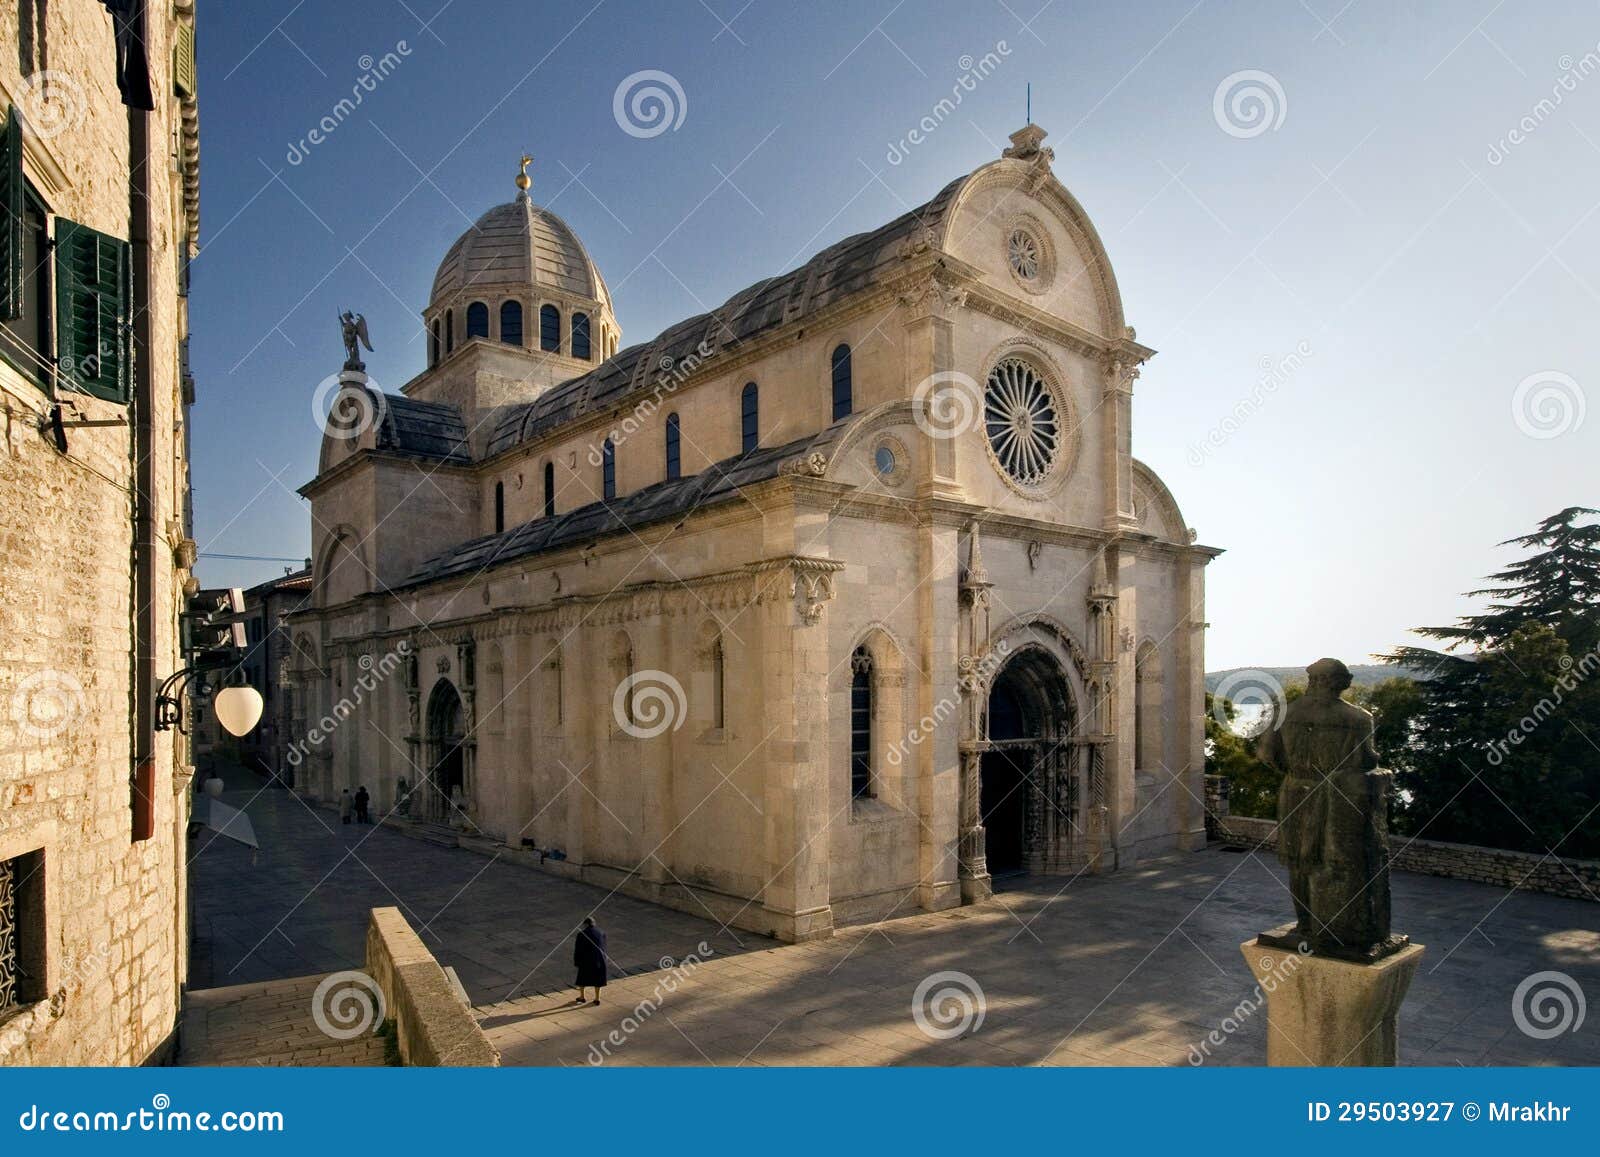 cathedral of st. james (sv jakov) in sibenik, croatia